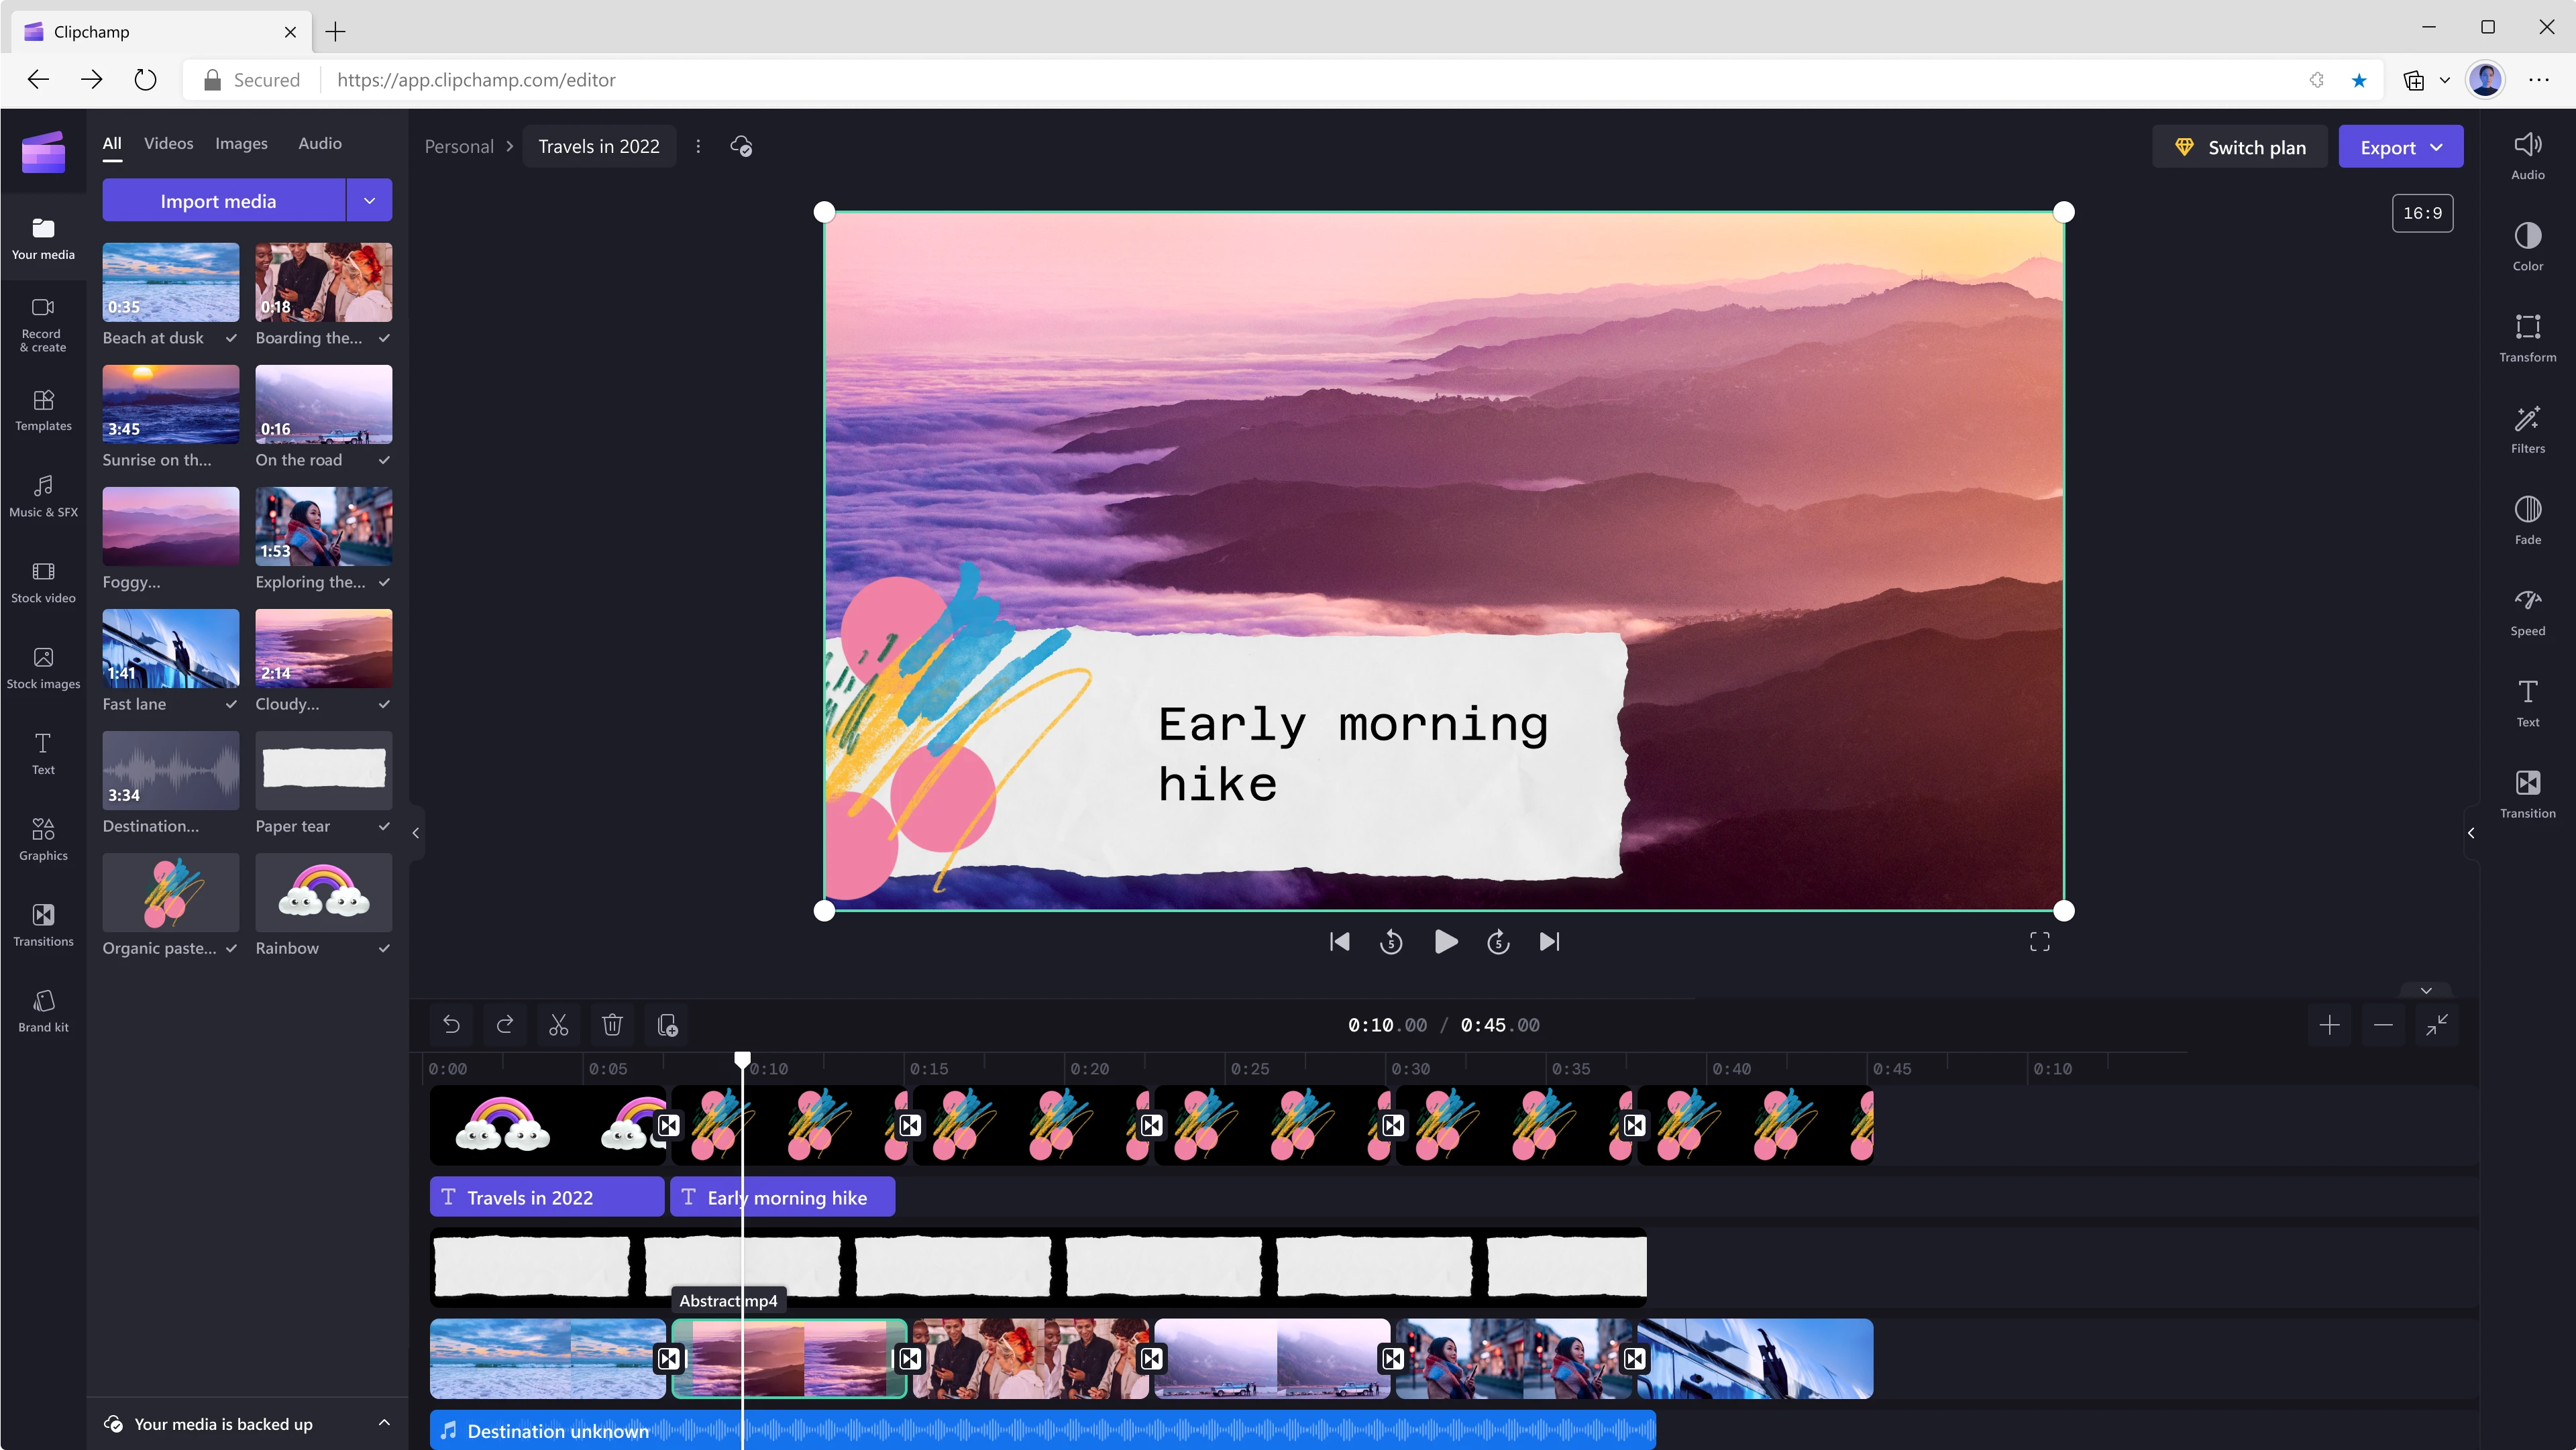 Een gebruiker bewerkt een video van 45 seconden met behulp van Clipchamp. Het frame bij de 10 seconden-markering toont bergen en wolken met een violette kleur, met de tekst 'Vroege ochtendwandeling' over het videoframe heen. 